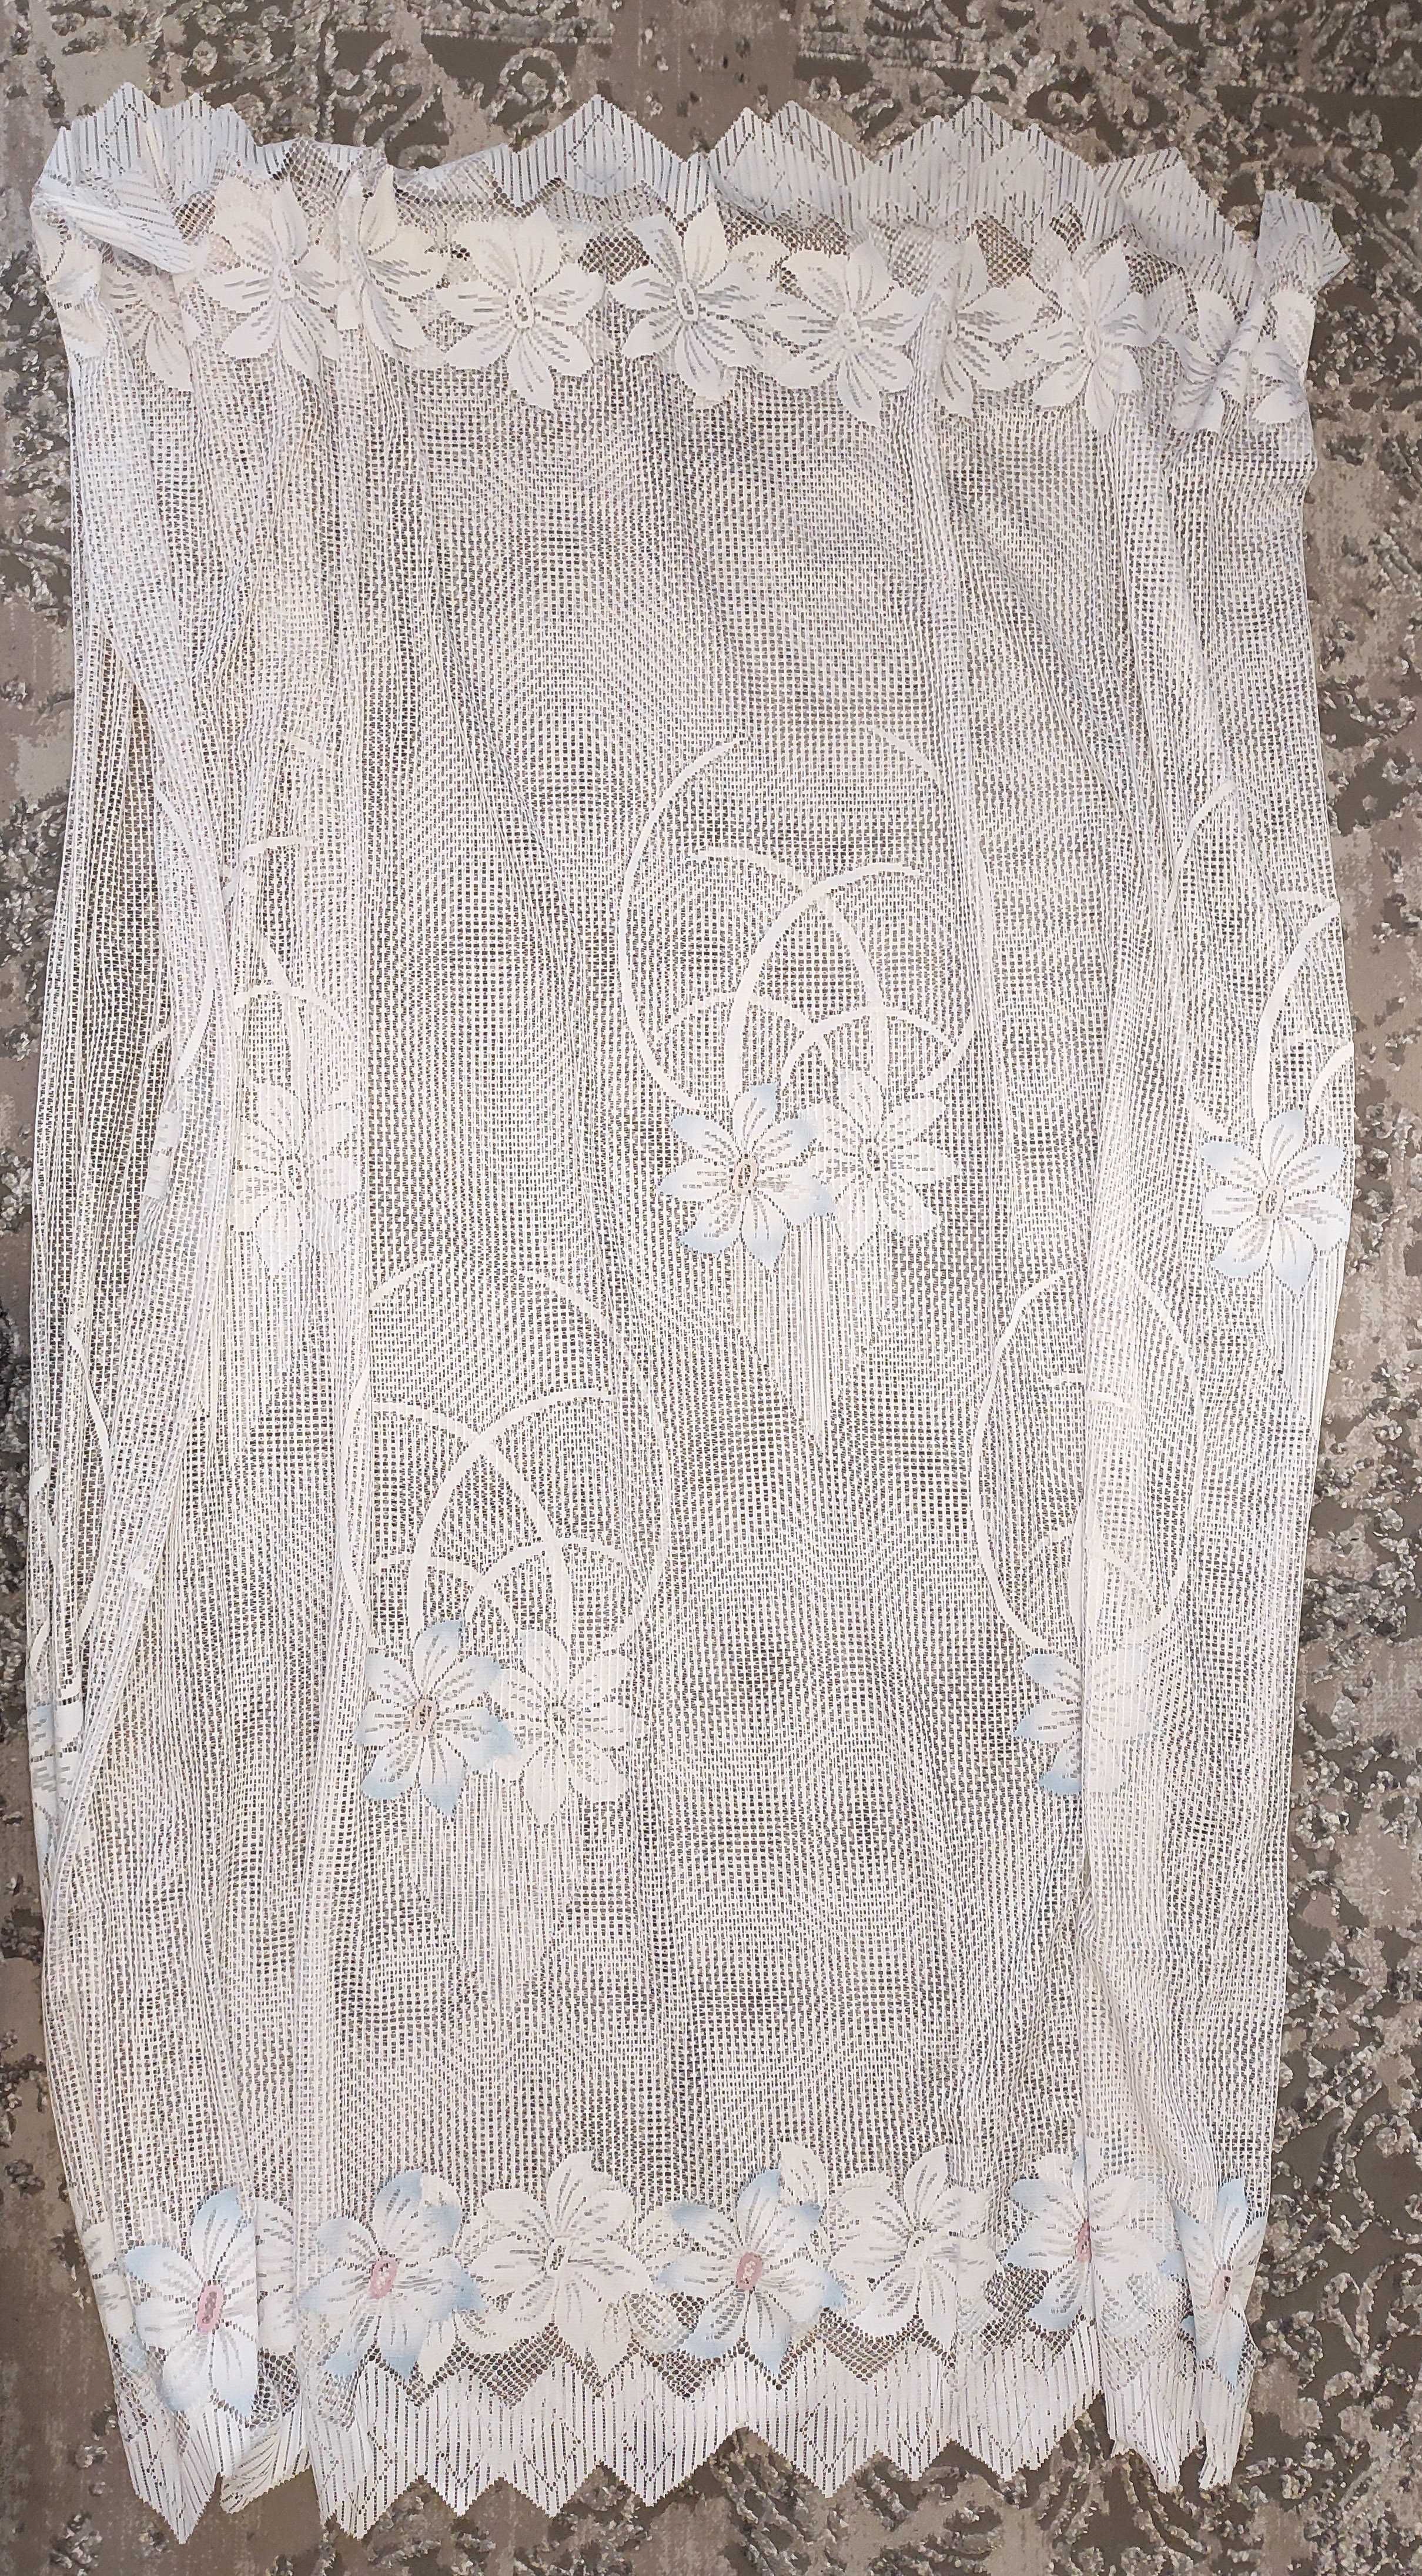 Тюль фіранка гардина штора віконна кухонна 200х300 см біла з квітами